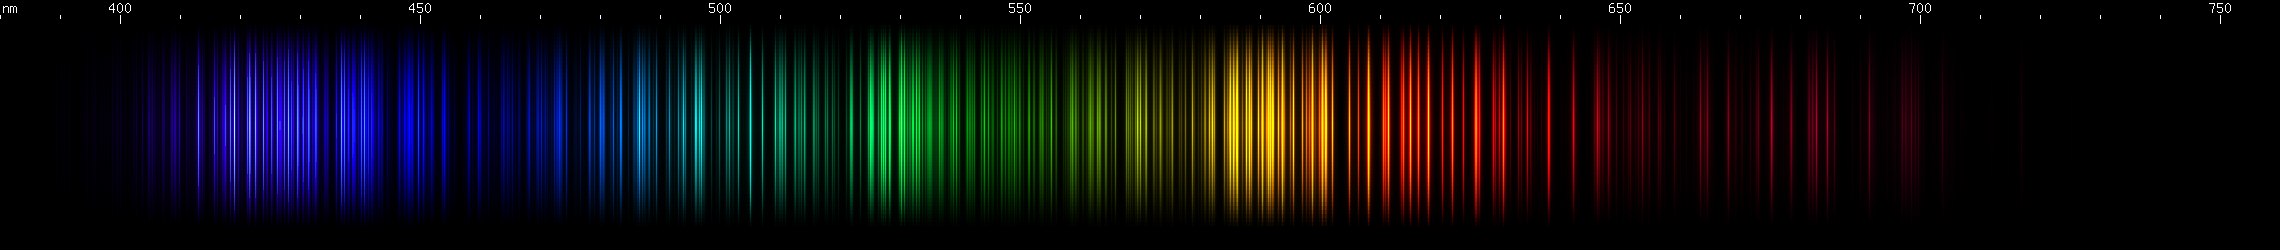 Spectral Lines of Gadolinium